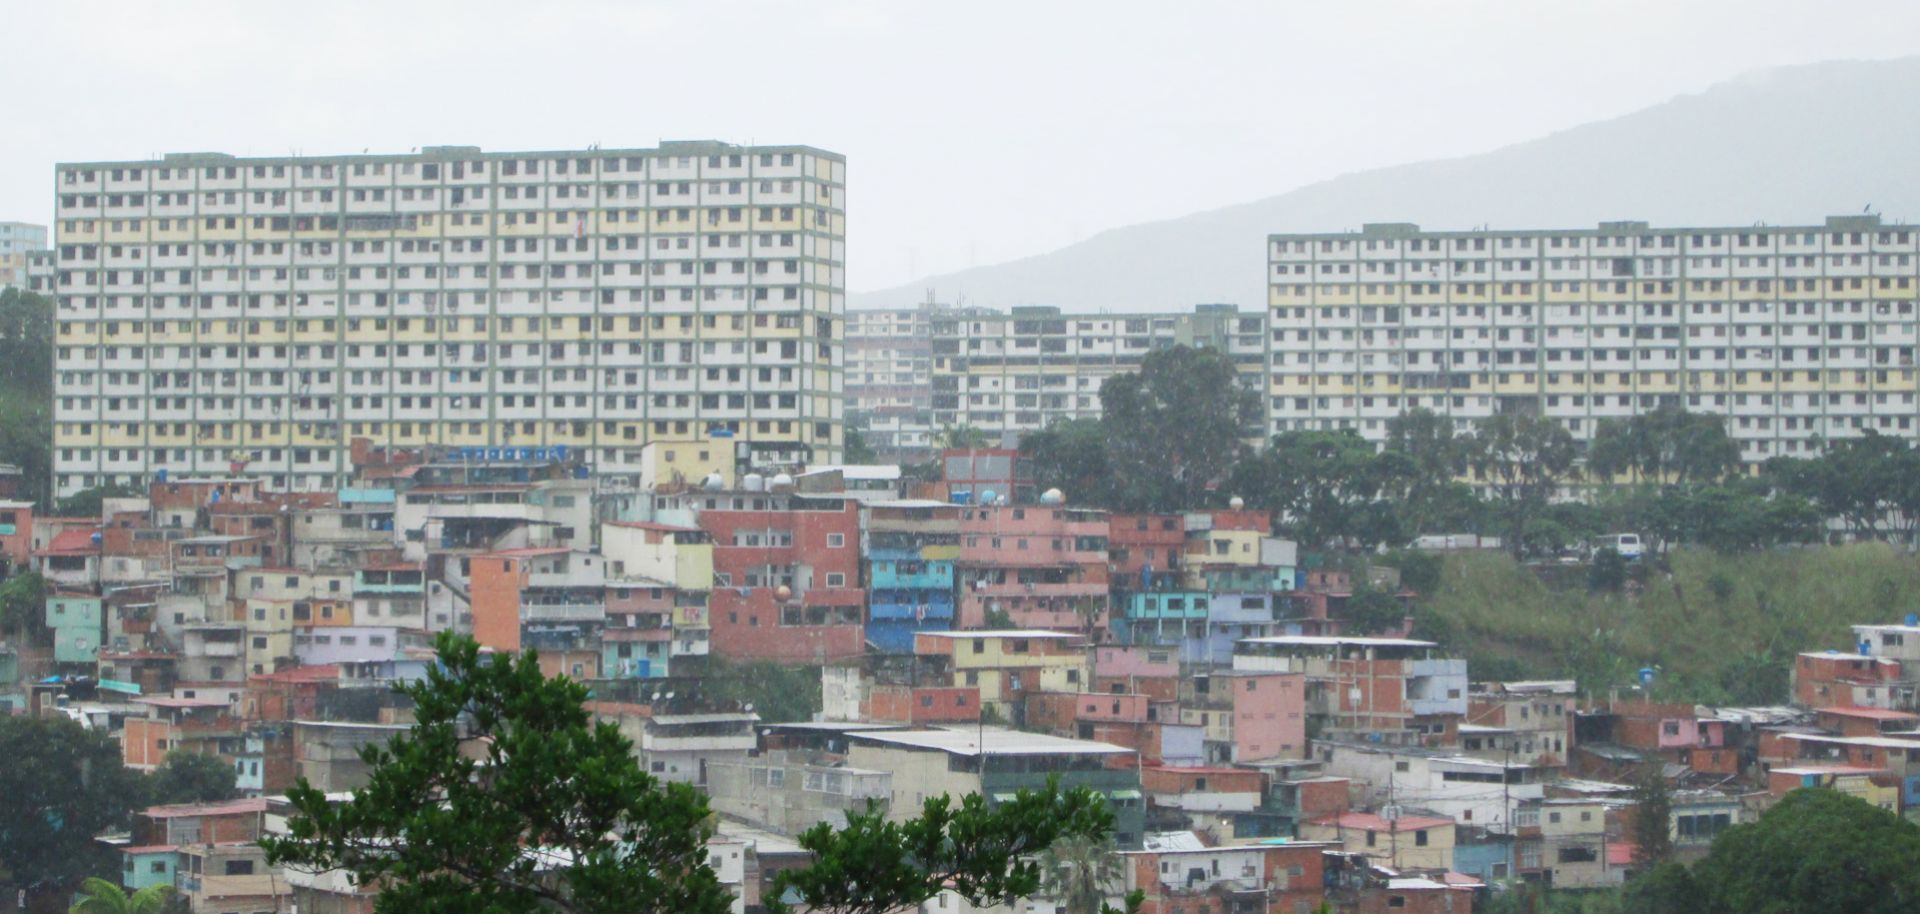 A general view shows the concrete superblocks in Barrio 23 de Enero in Caracas.